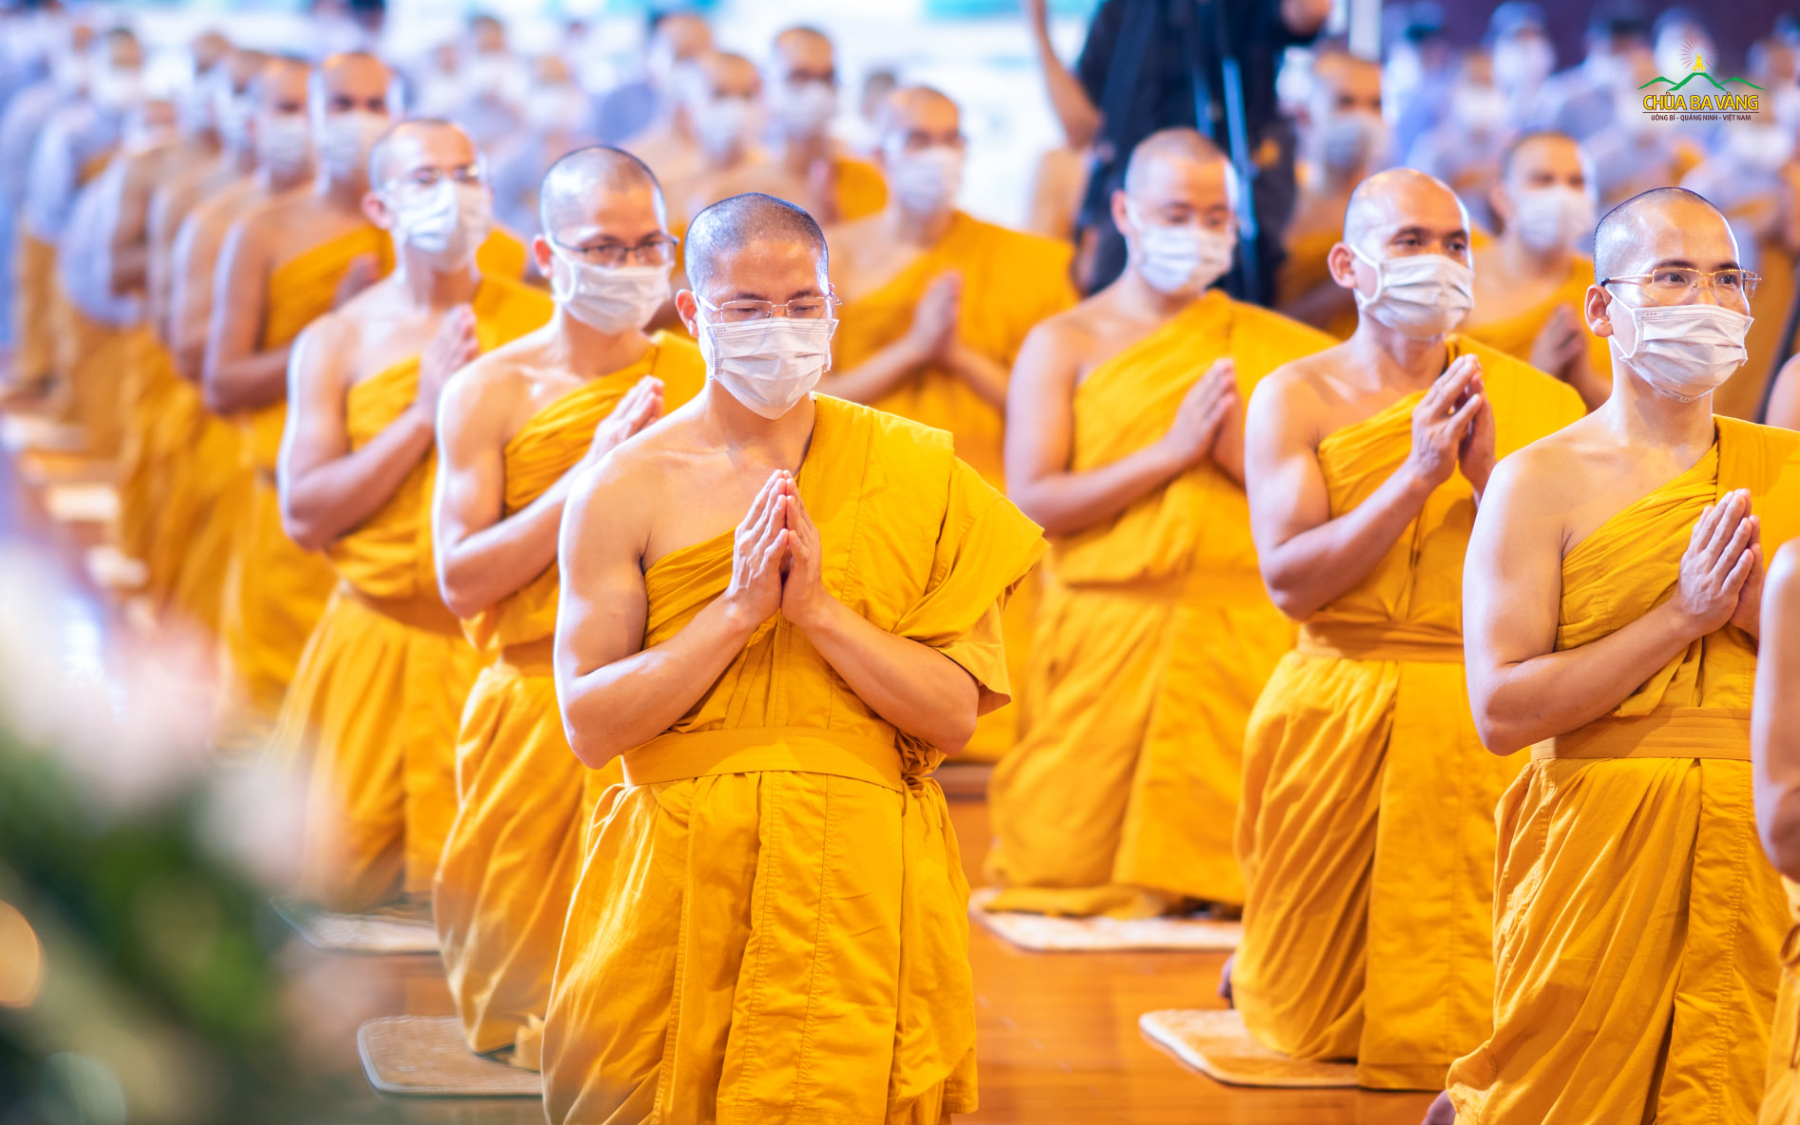 Hướng về Sư Phụ, tứ chúng đã dũng mãnh phát nguyện Bồ đề, để vững bước trên con đường tầm cầu Phật quả